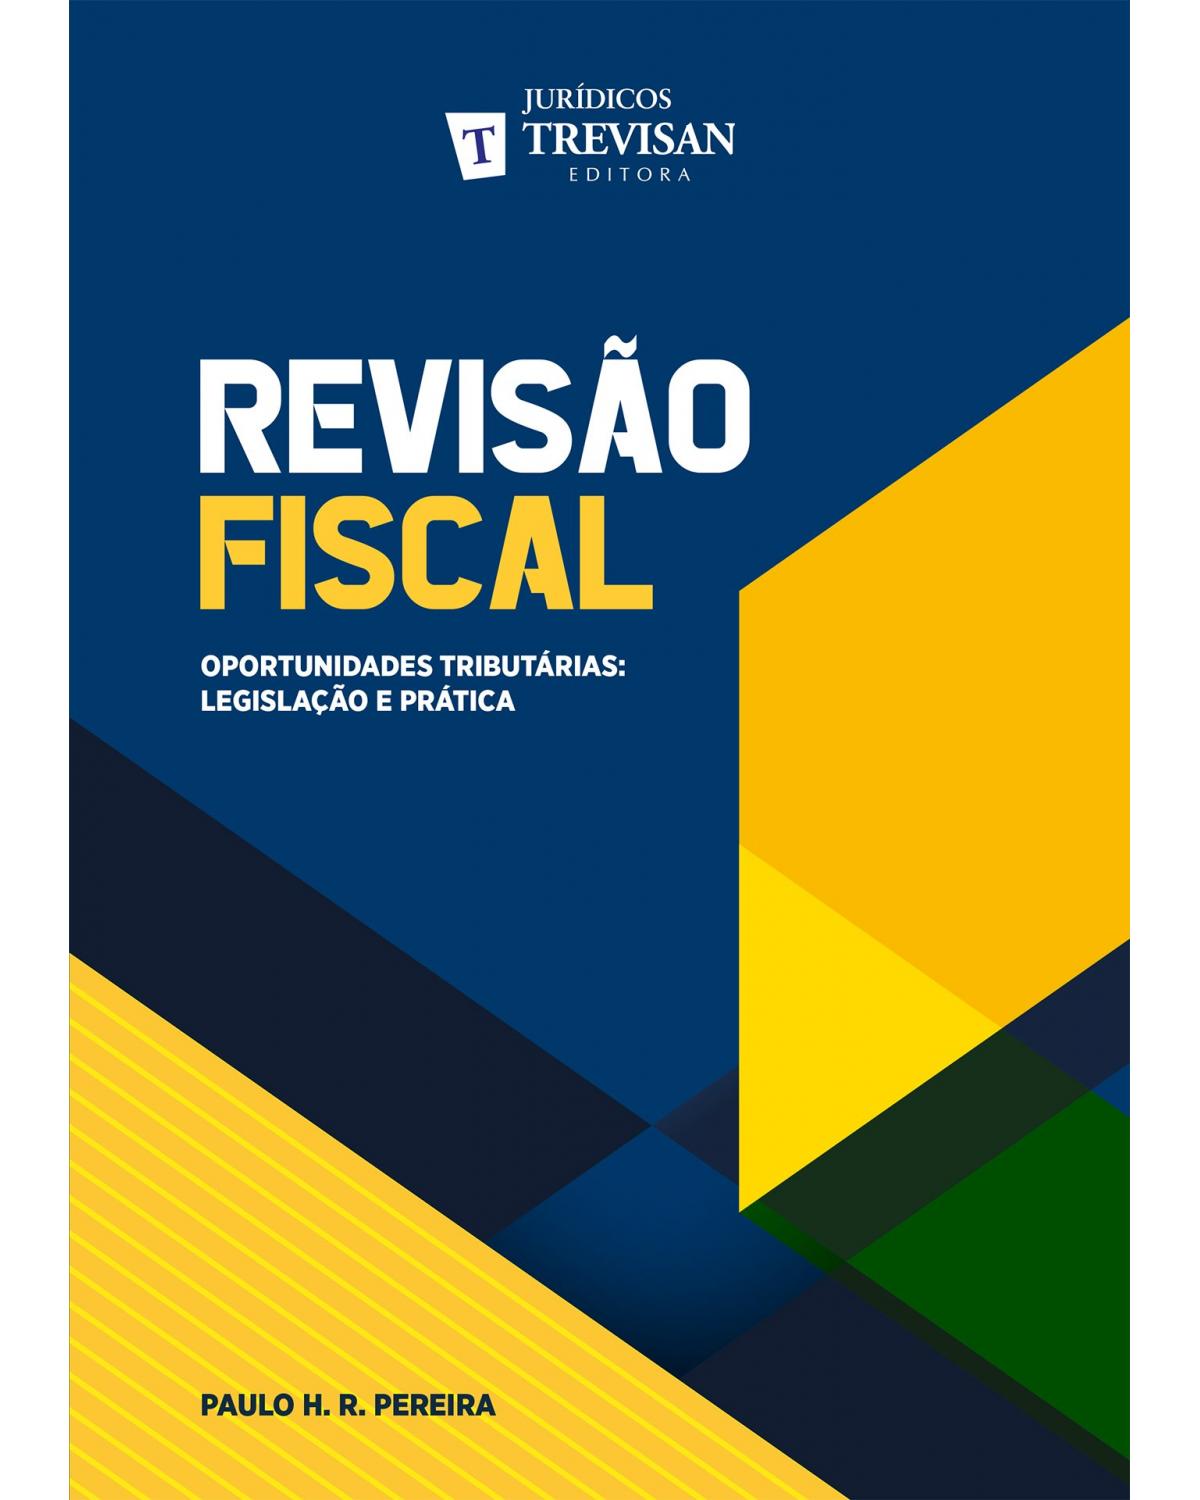 Revisão fiscal: Oportunidades tributárias - Legislação e prática - 1ª Edição